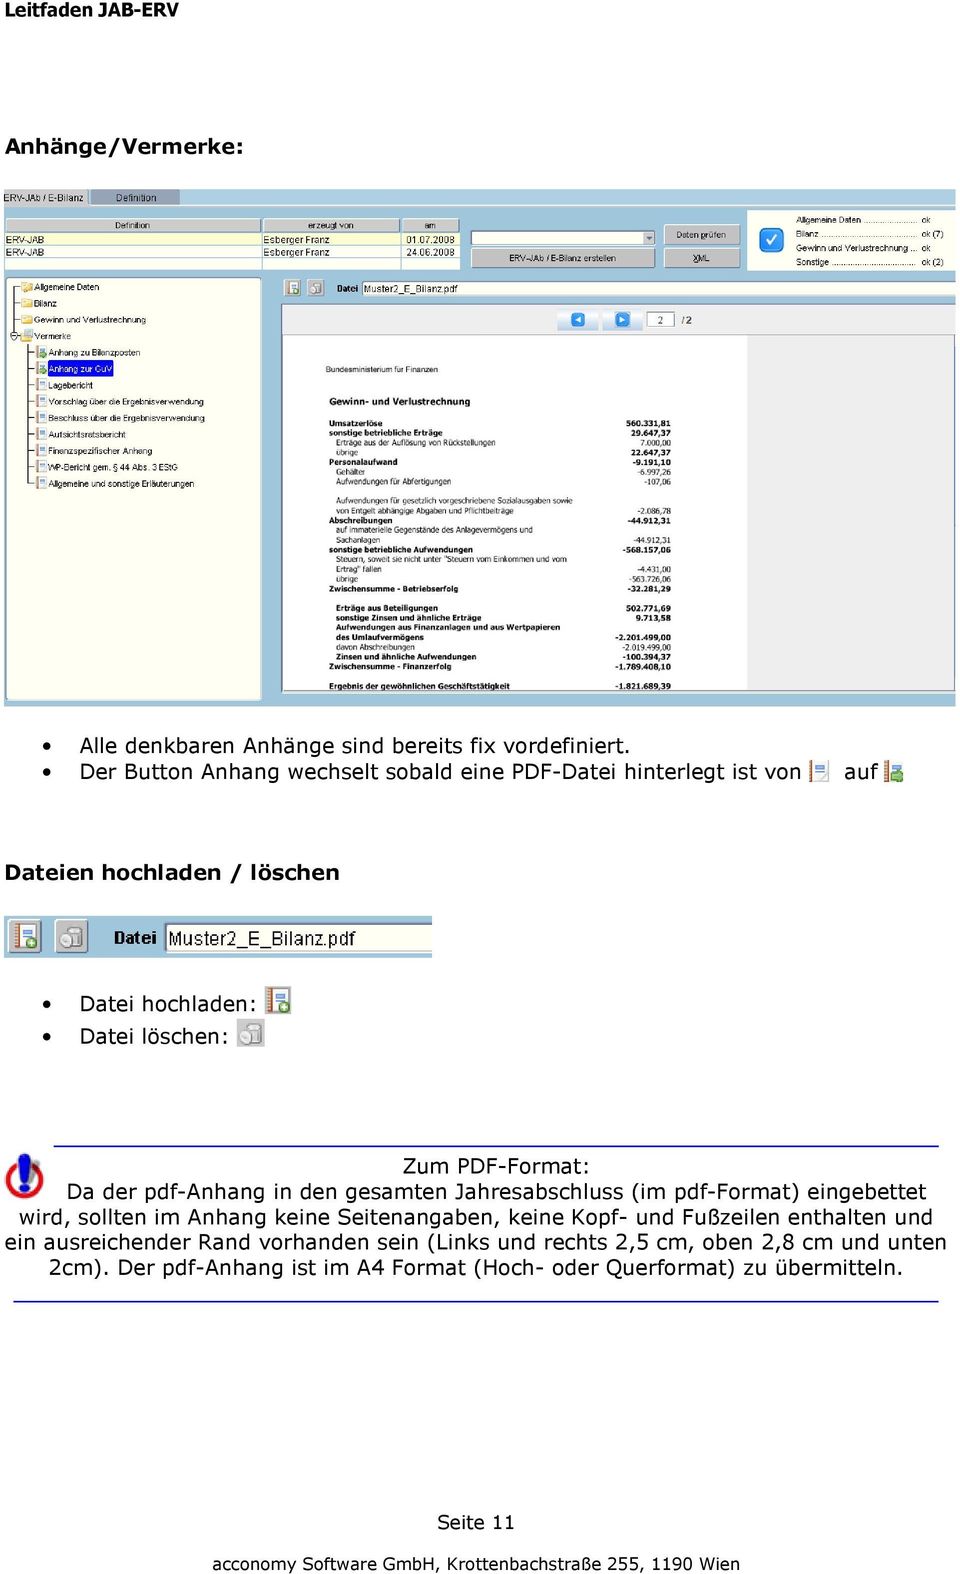 PDF-Format: Da der pdf-anhang in den gesamten Jahresabschluss (im pdf-format) eingebettet wird, sollten im Anhang keine Seitenangaben,